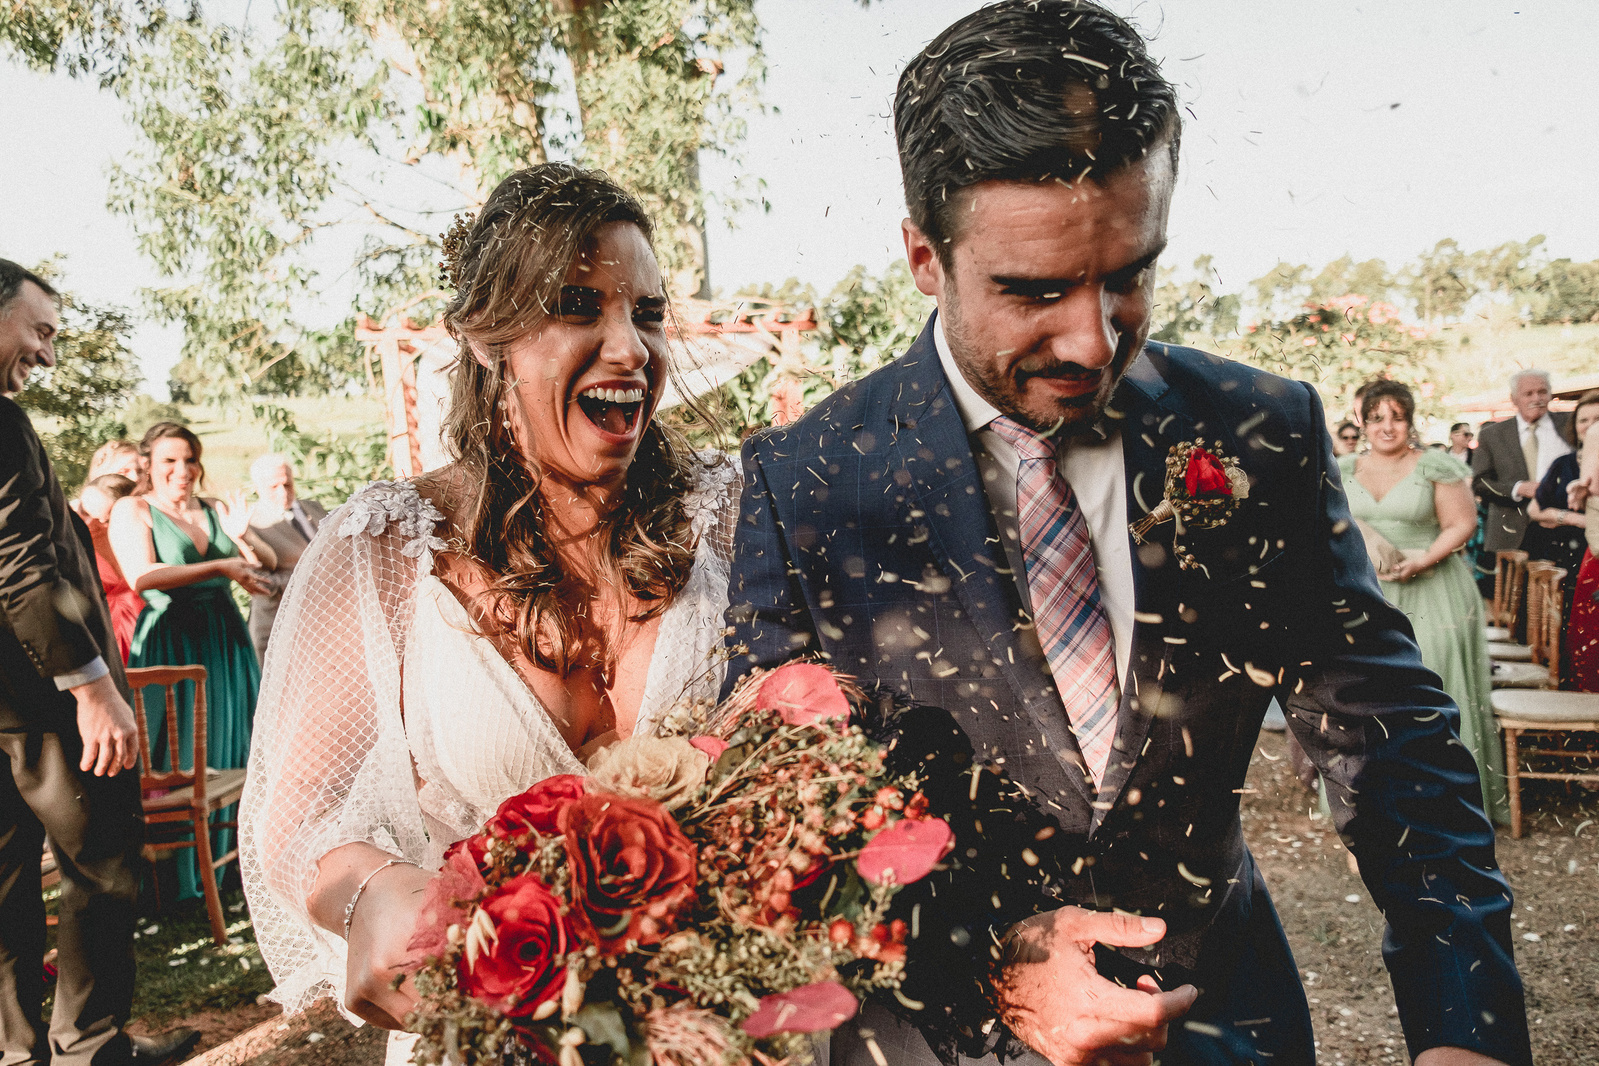 Casamento de Nina e Guilherme em Avaré/SP. Fotos por Israel Denadai